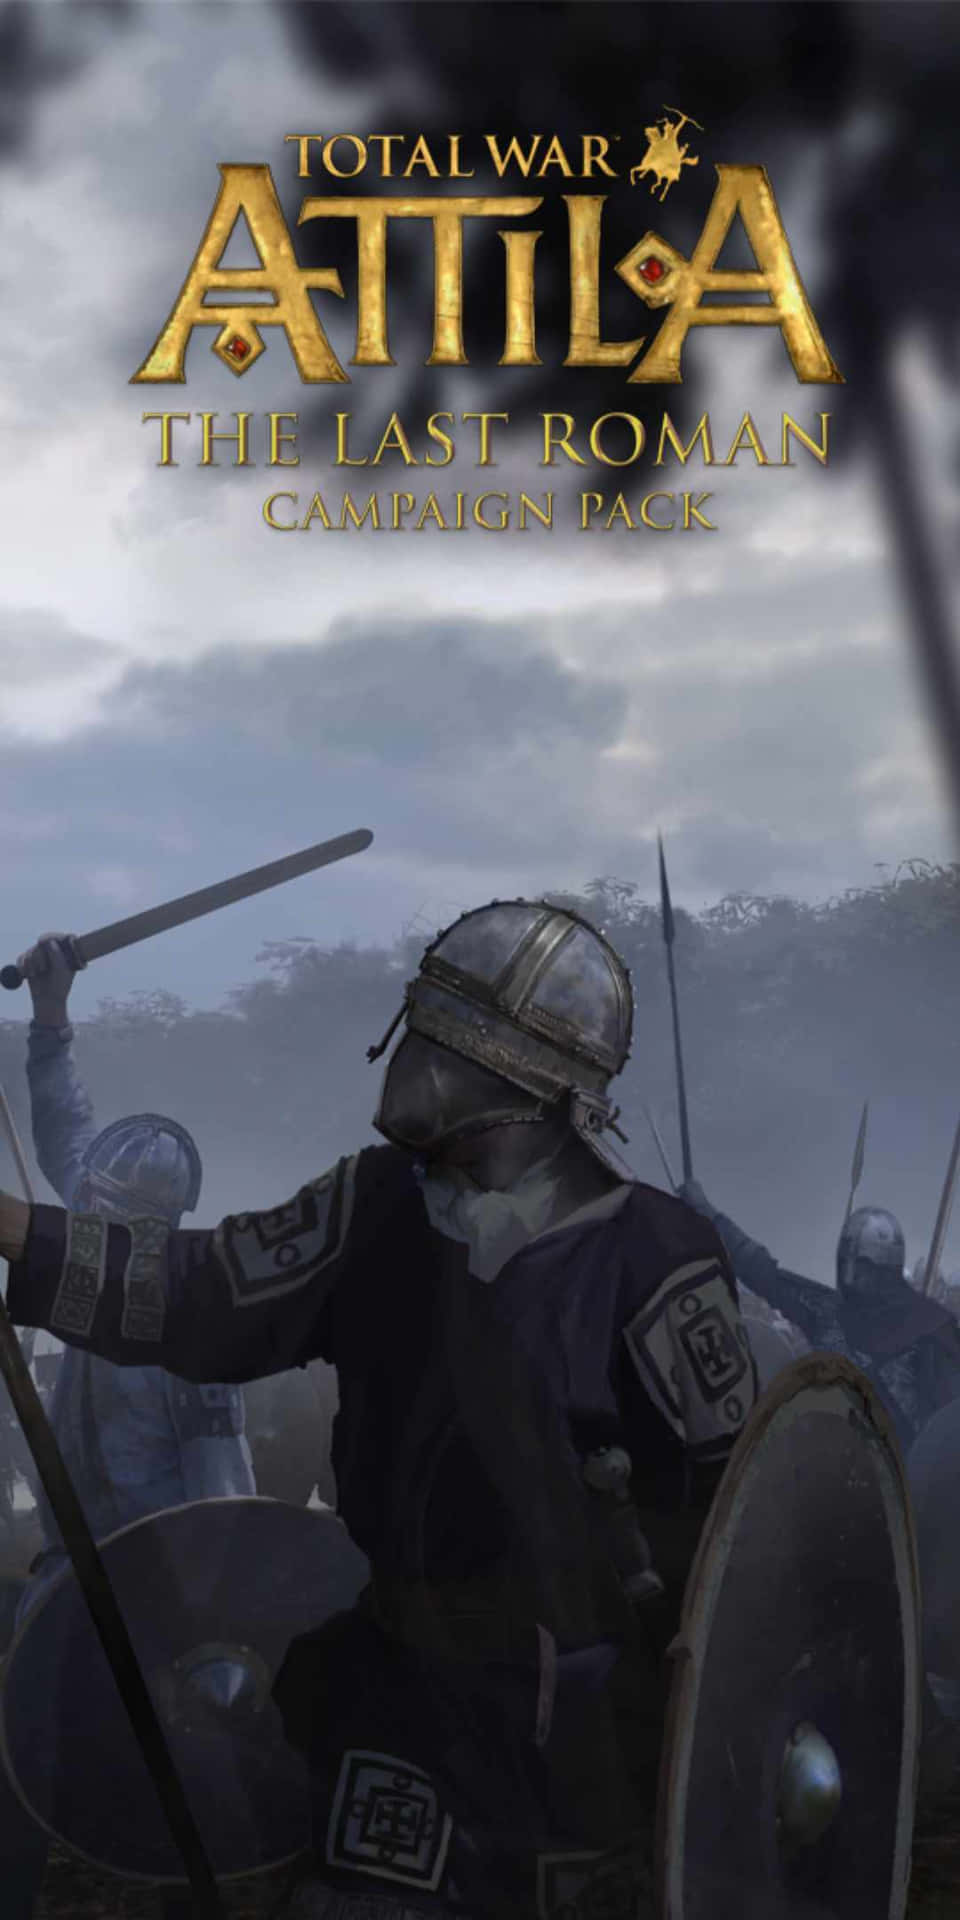 Kryds Totalt Slag Attila på Pixel 3: Tag med på et brag af et slag mellem bogstaveligt talt hundredvis af middelalderlige enheder.